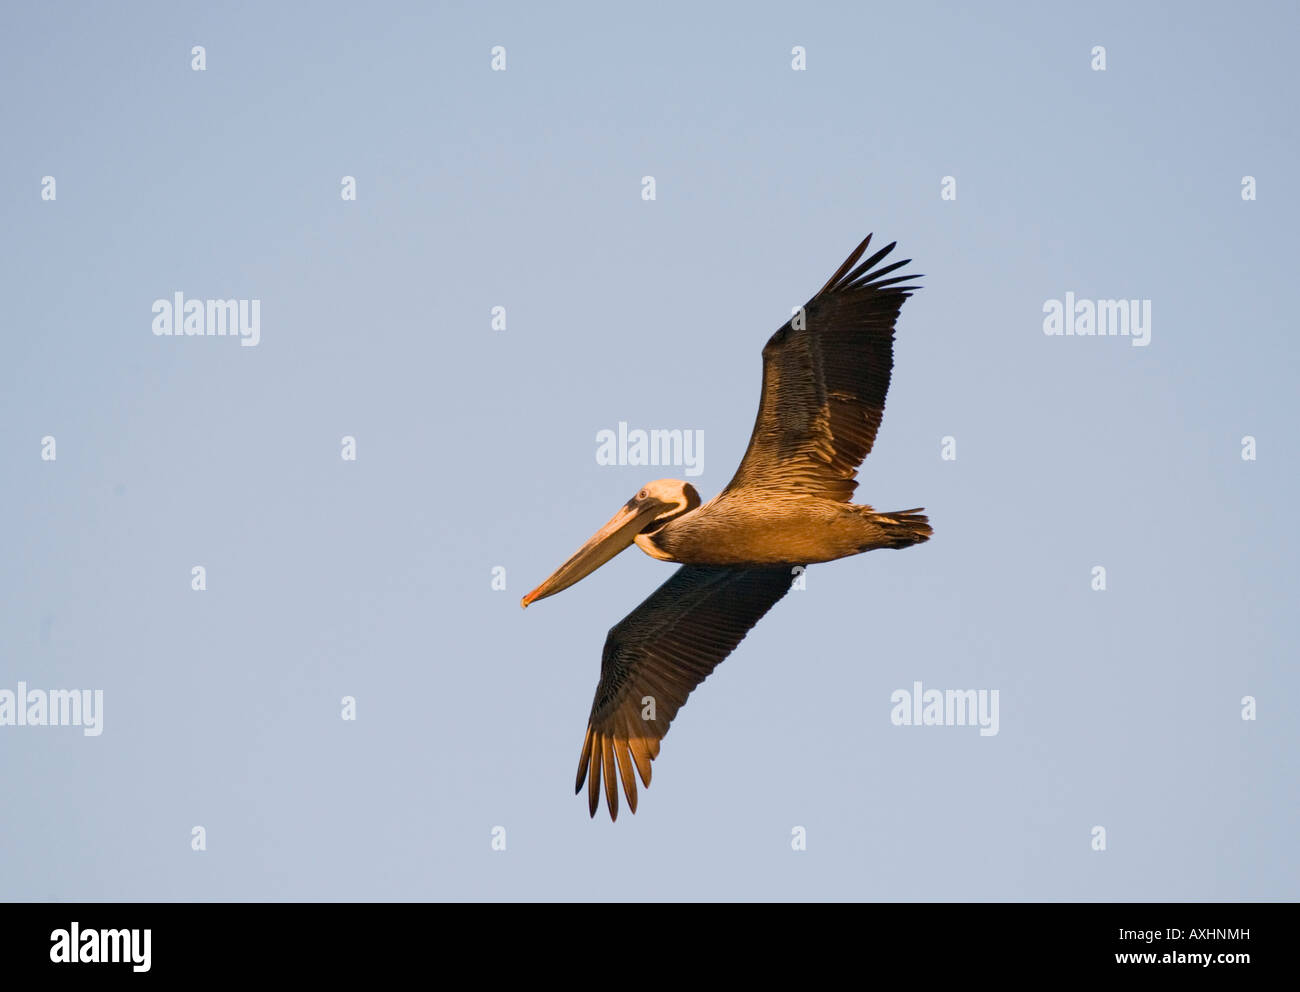 Pélican brun simple Pelecannus occidentalis volant dans la lumière au coucher du soleil Banque D'Images